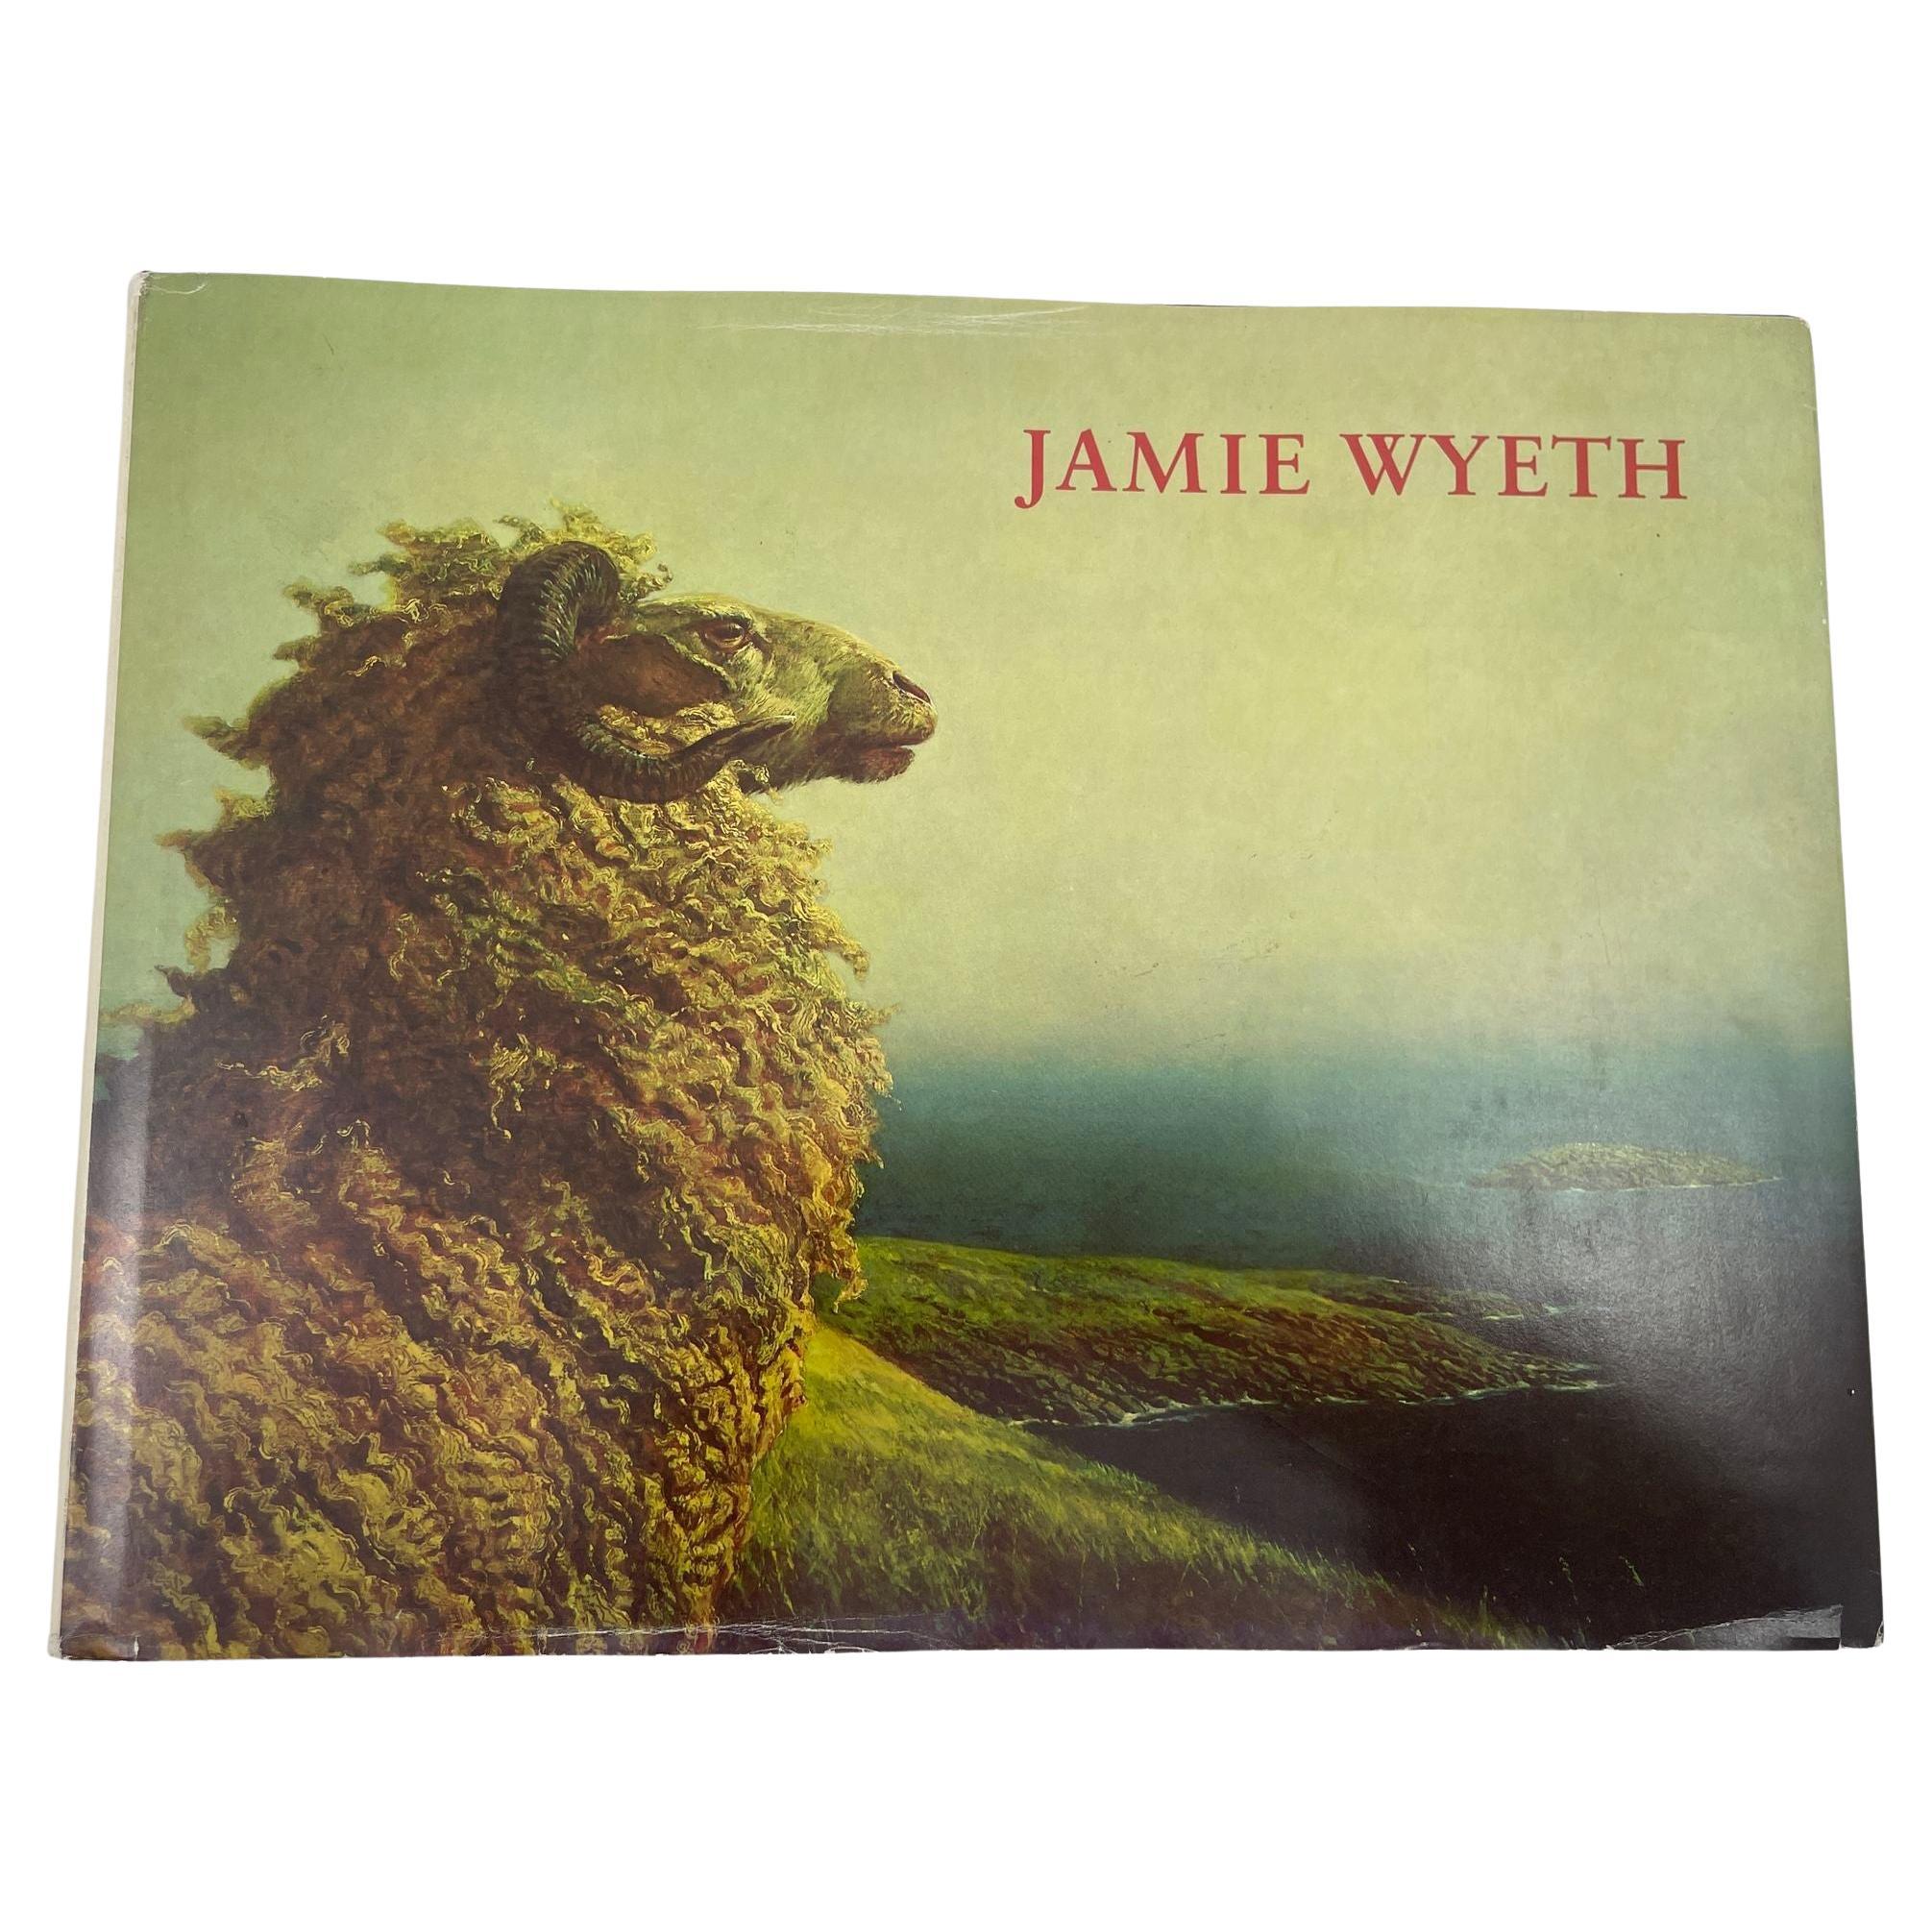 Jamie Wyeth von Jamie Wyeth, Hardcoverbuch 1980, 1. Auflage.